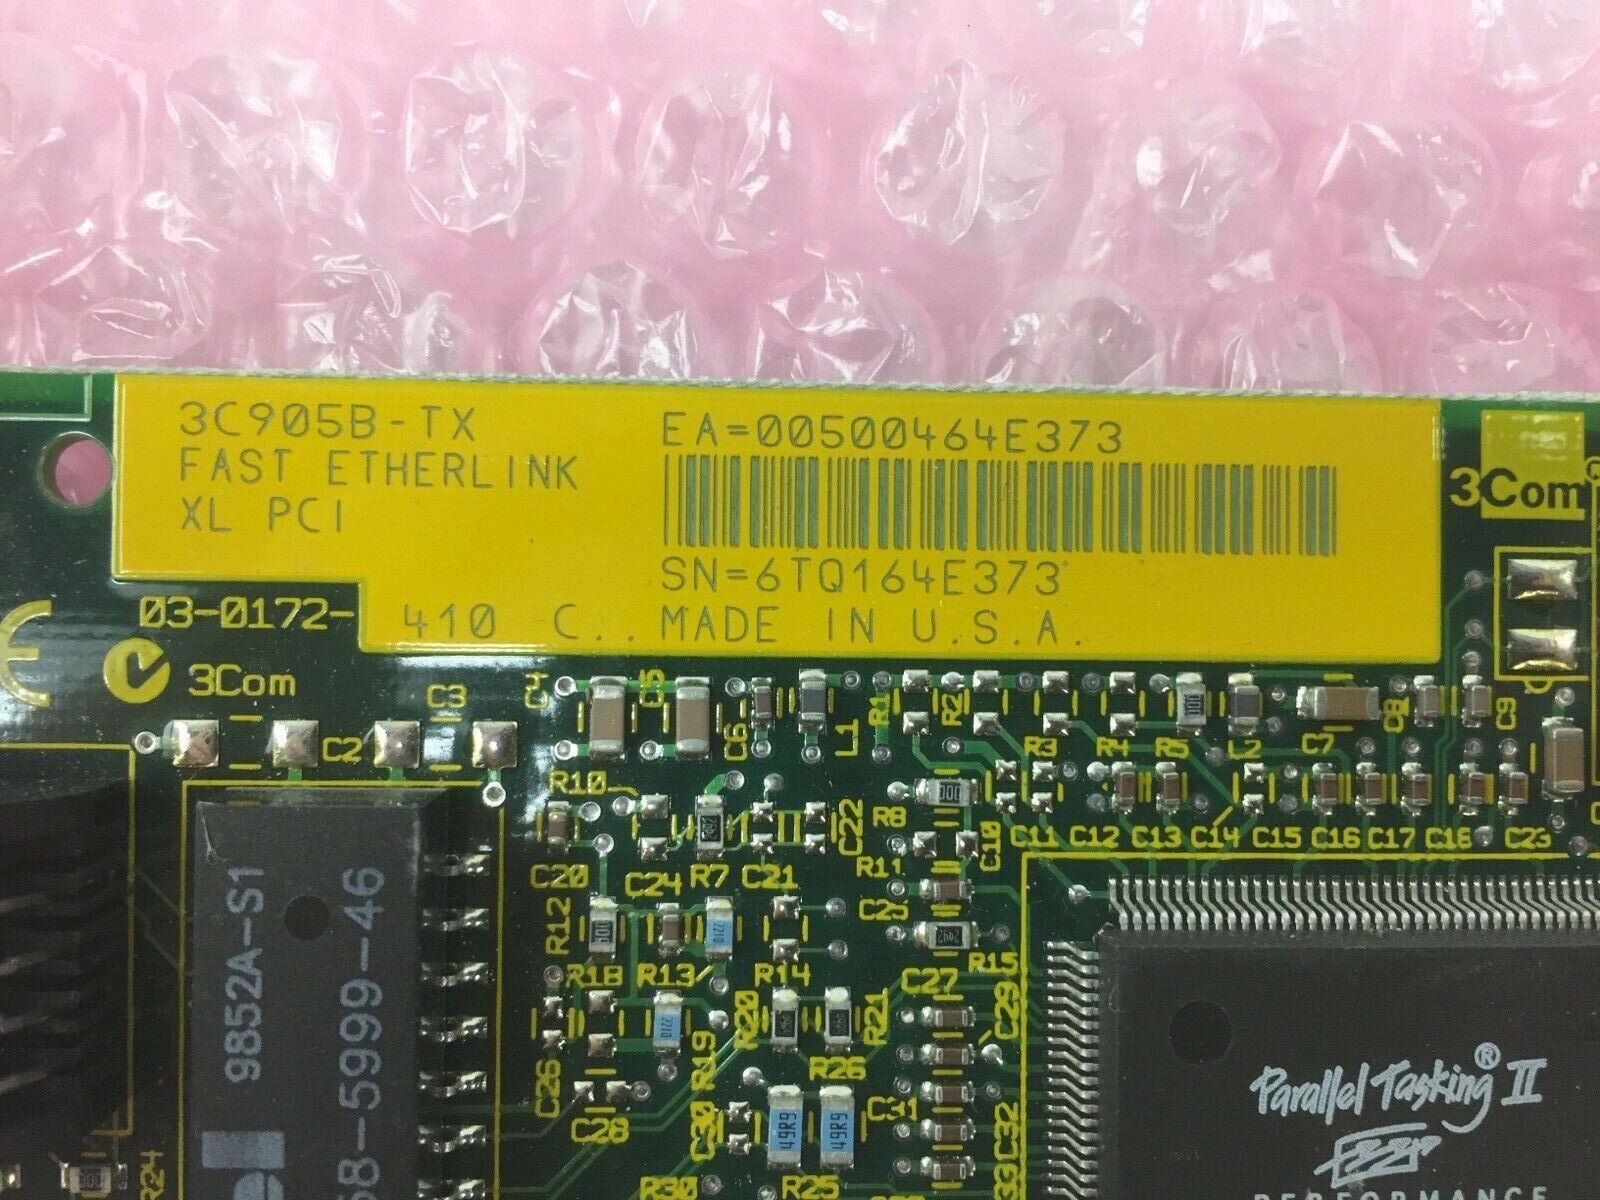 3Com Fast Etherlink XL PCI 10/100 Base-TX Ethernet Adapter 3C905B-TX Card